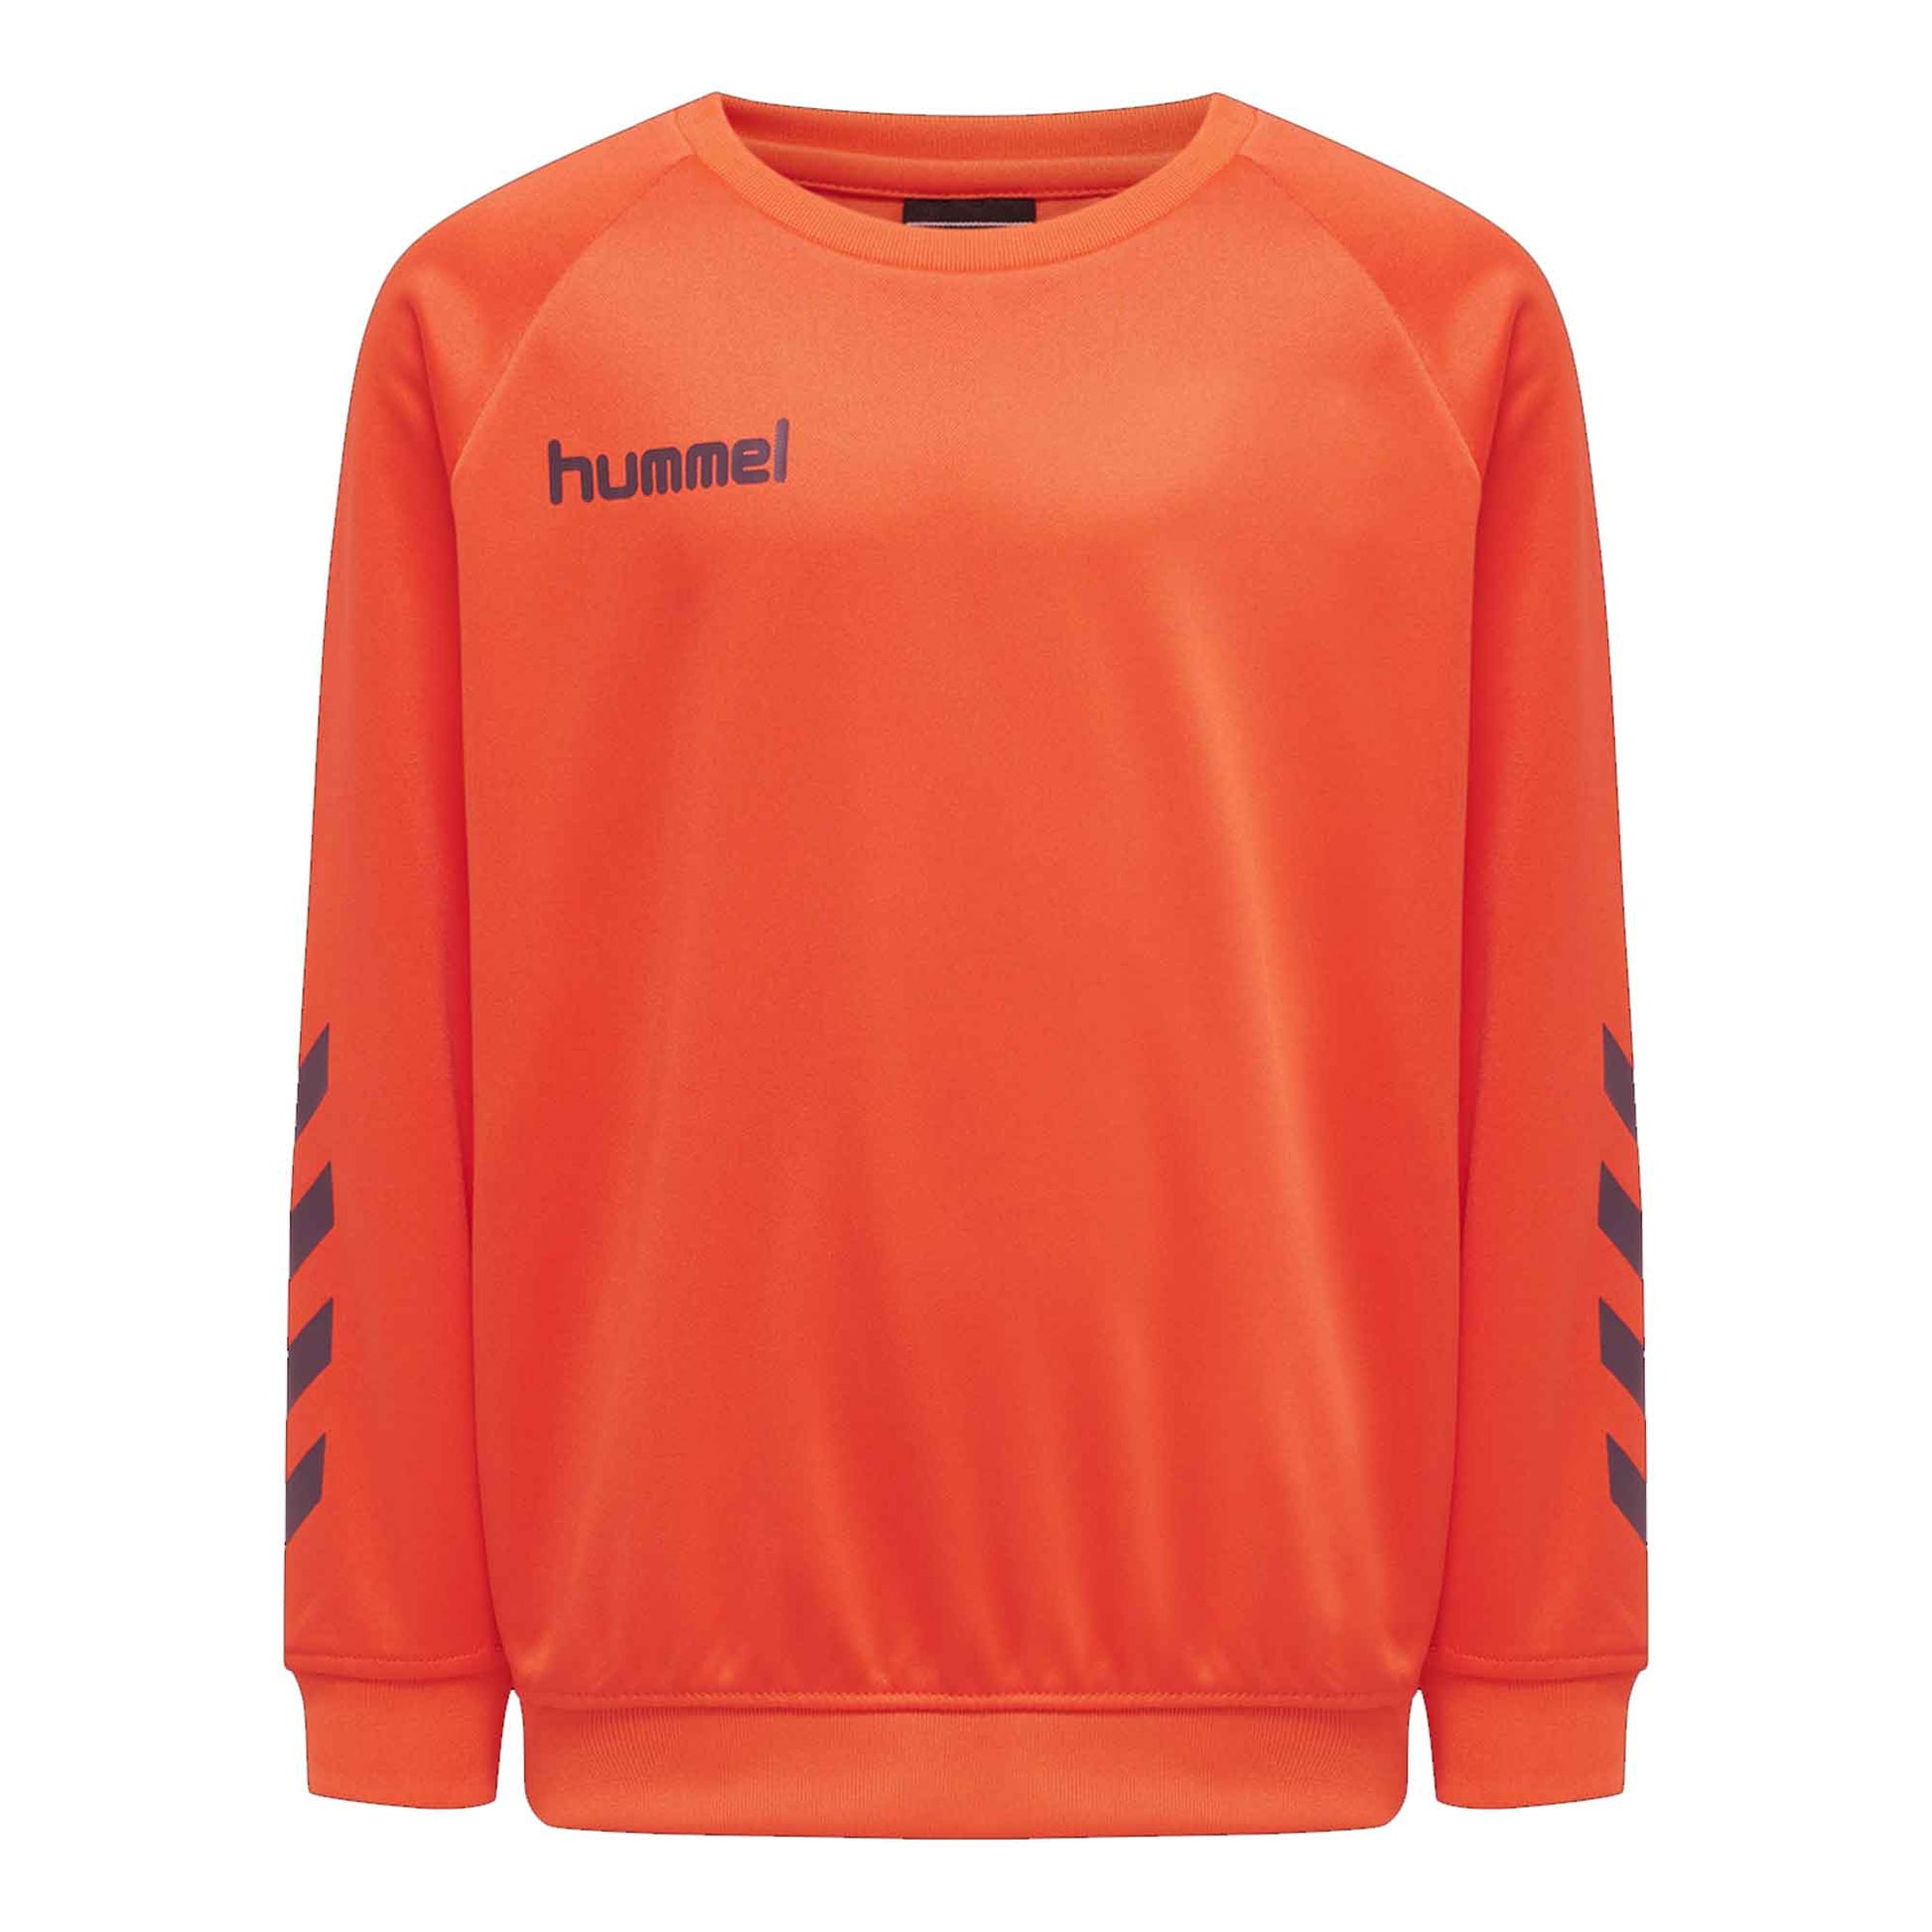 Hummel Boy's Activewear Raglan Sleeve Tee Shirt Boy's Tee Shirt HAS Apparel Orange 4 Years 